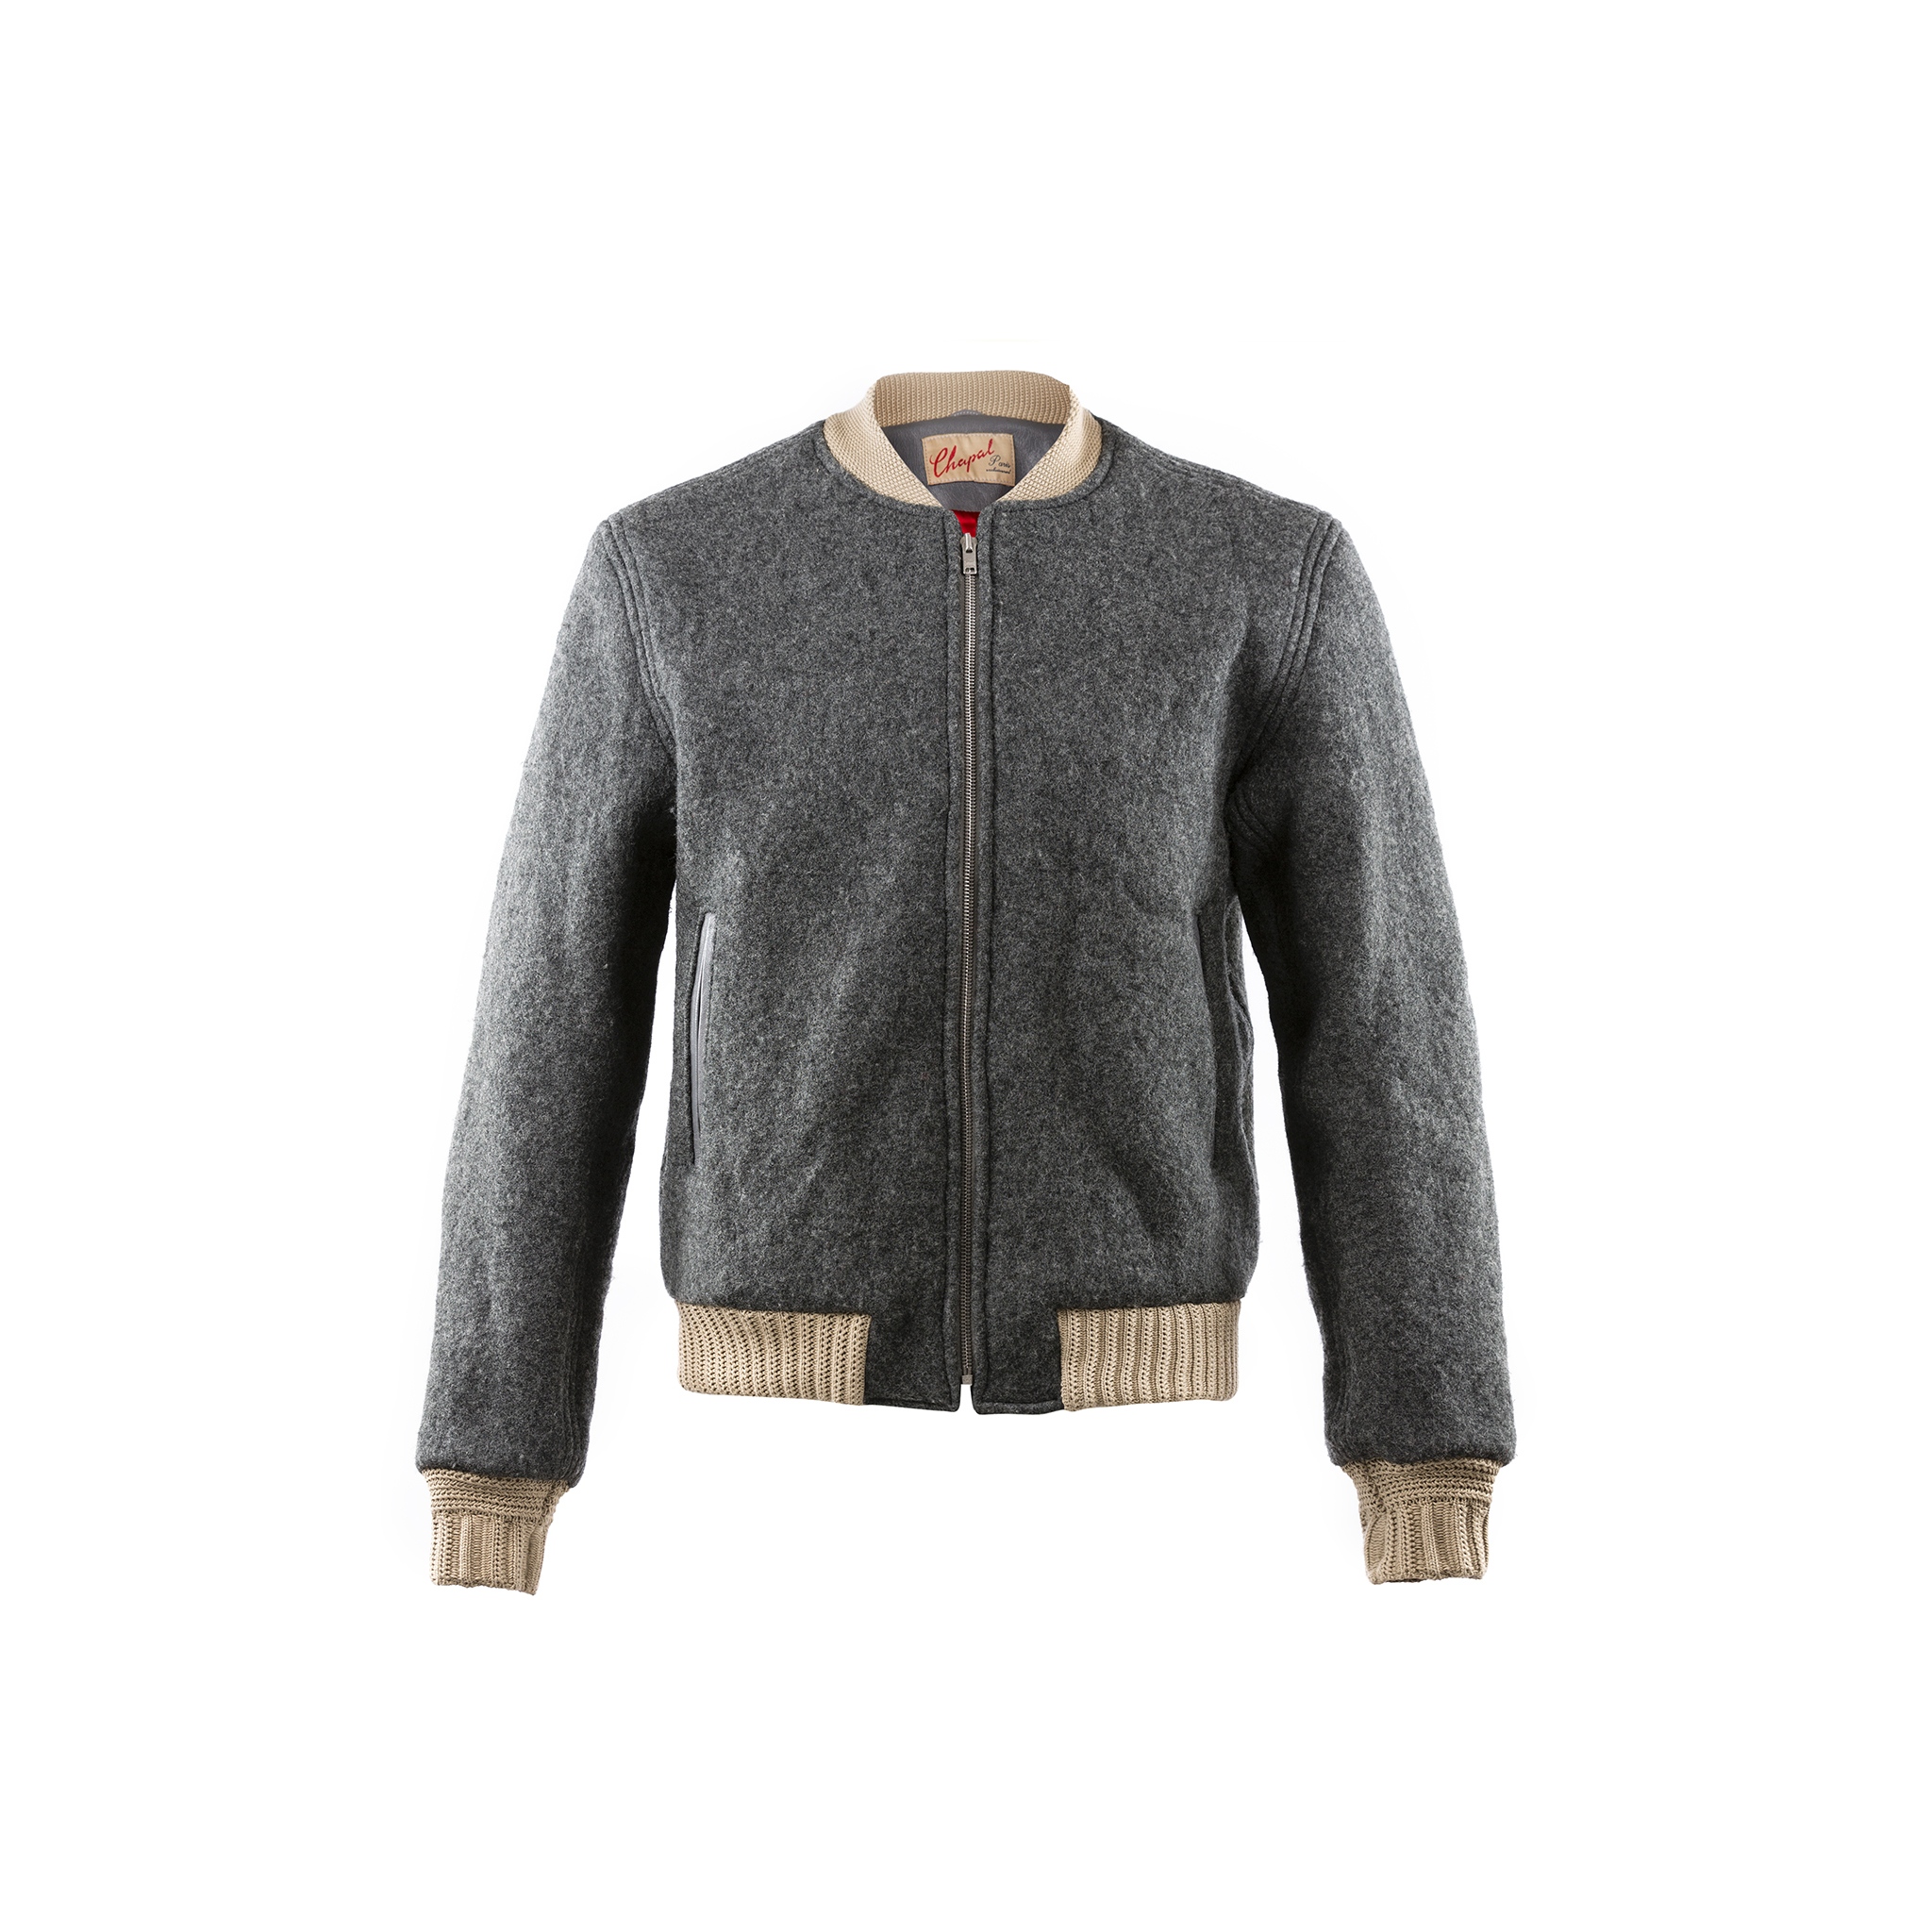 Queens Jacket - Merino wool - Grey color